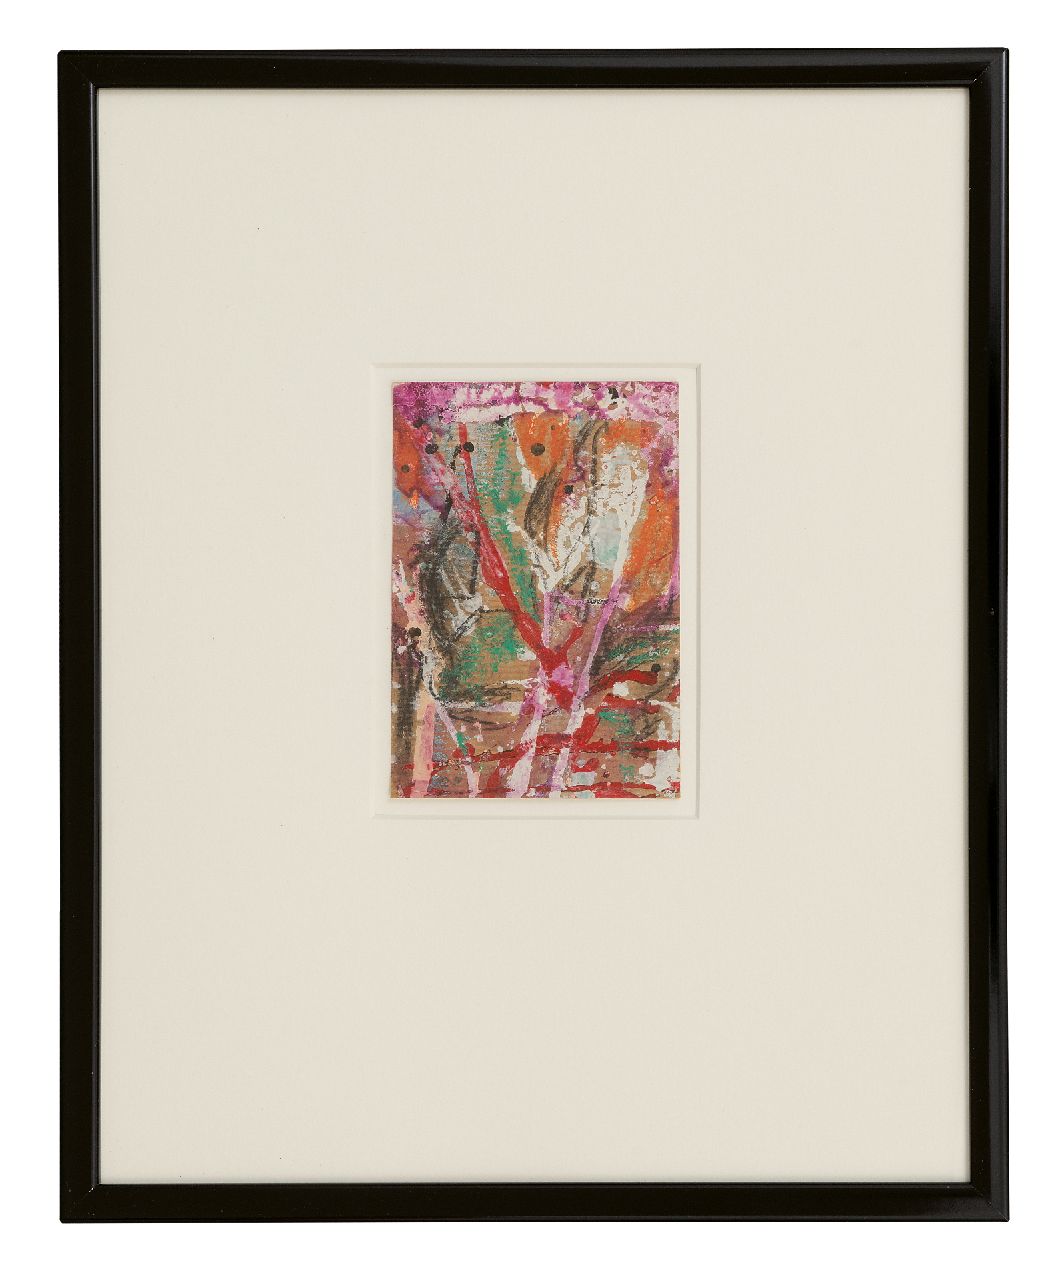 Snijders A.C.  | Adrianus Cornelis 'Ad' Snijders | Aquarellen en tekeningen te koop aangeboden | Zonder titel, gemengde techniek en collage op papier 14,7 x 10,2 cm, gesigneerd linksonder met initialen en gedateerd '90